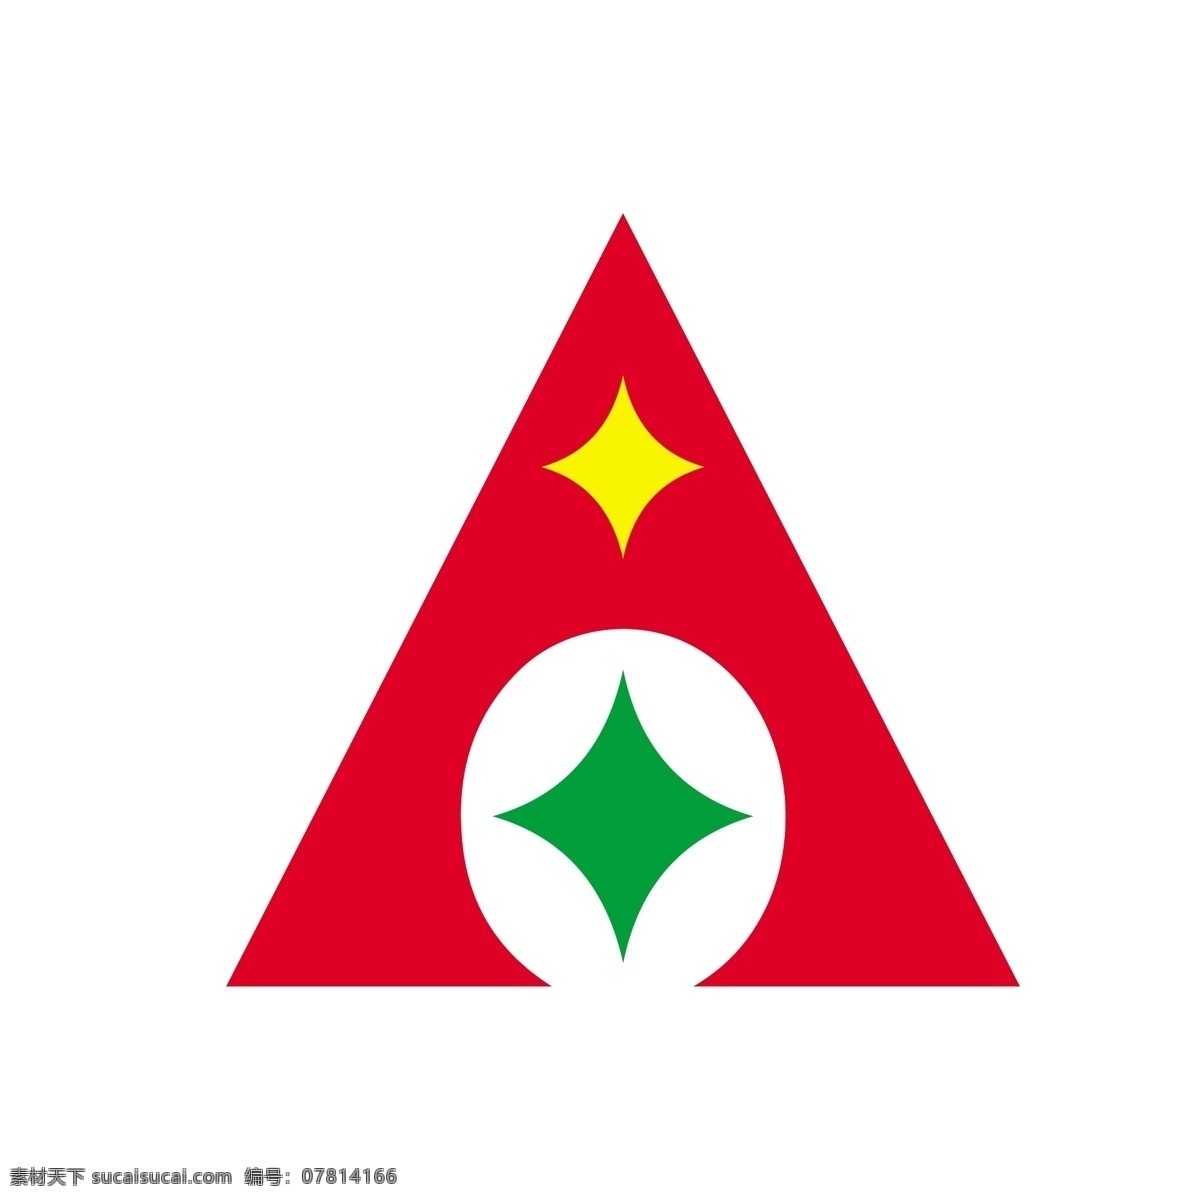 金色 中国农业发展银行 logo 三角形 几何 尖锐 中国 农业 发展 银行logo 矢量图